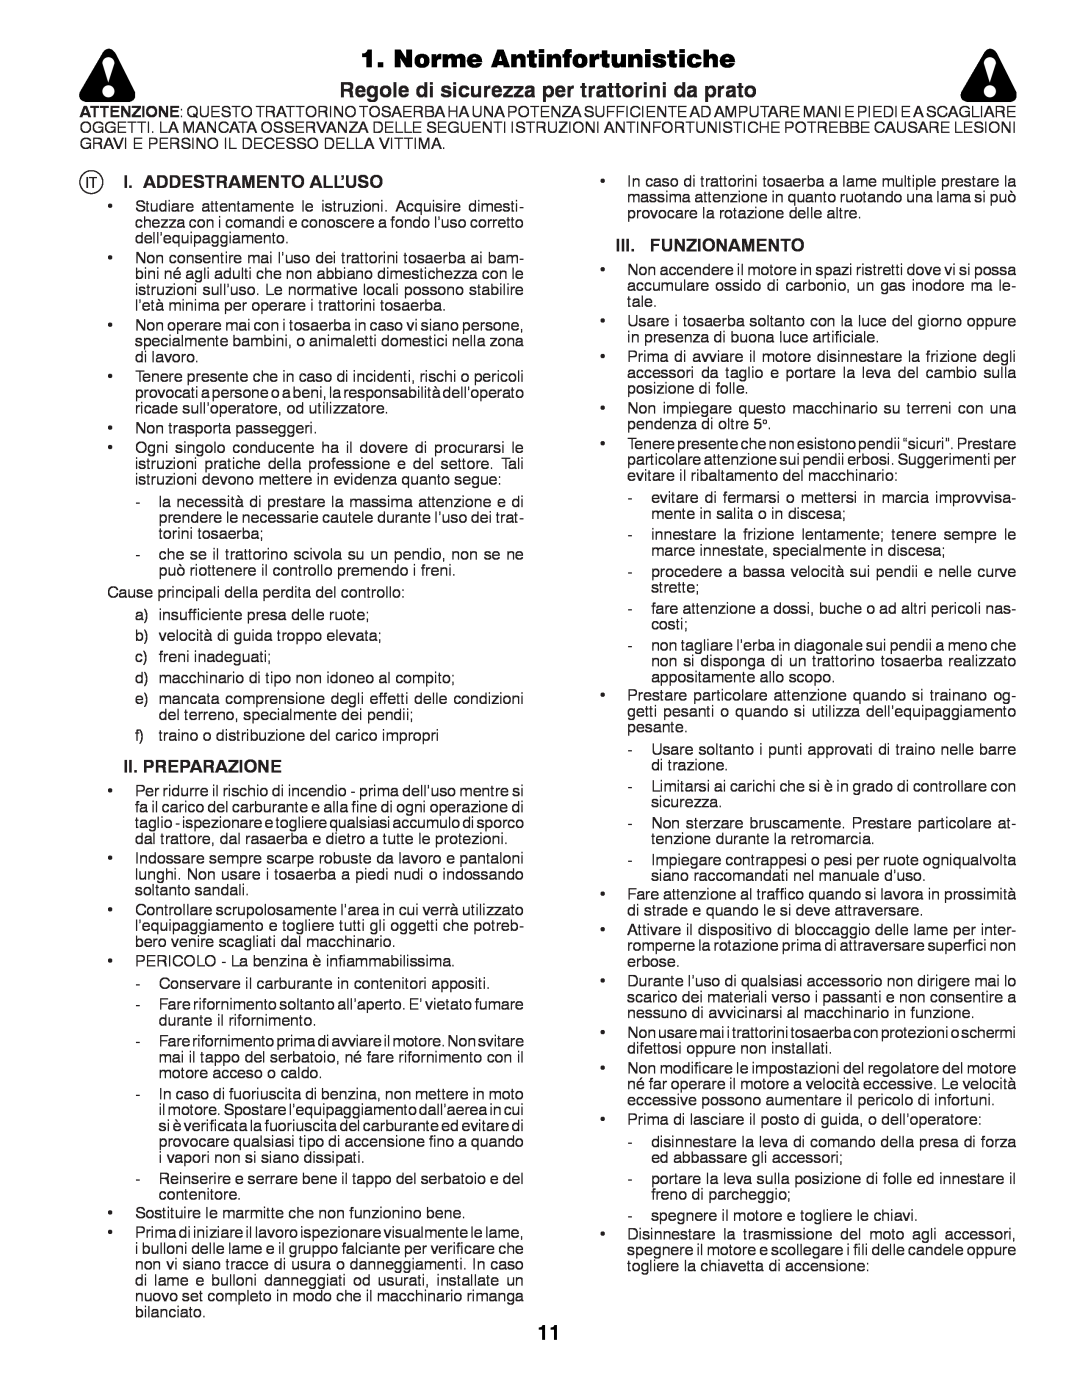 Husqvarna LTH152 Norme Antinfortunistiche, Regole di sicurezza per trattorini da prato, I. Addestramento All’Uso 